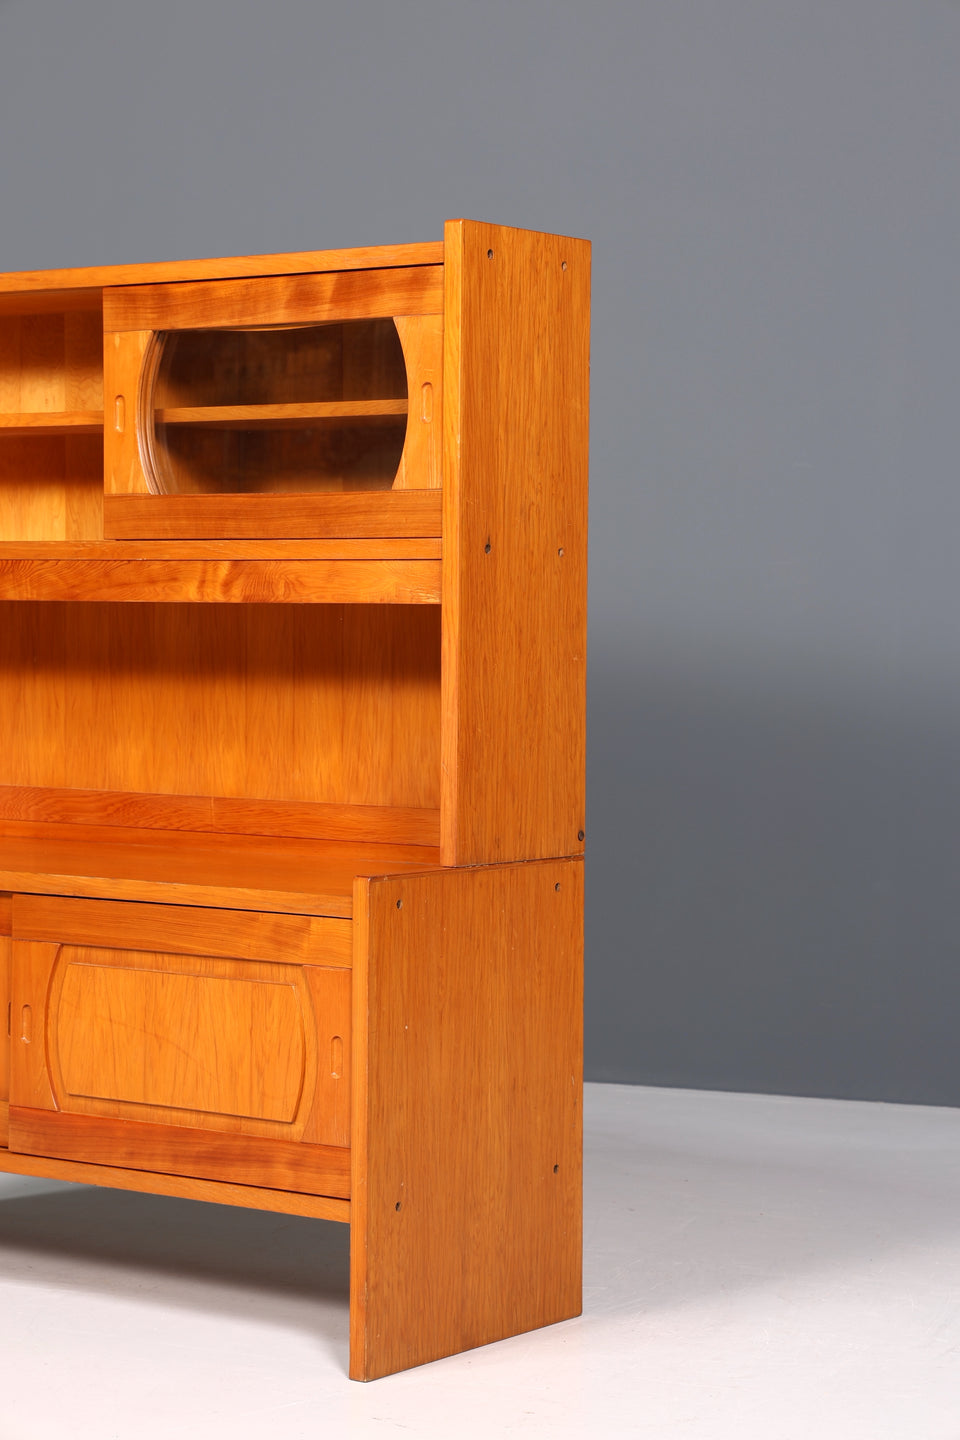 Wunderschönes Mid Century Schrank Vintage Highboard Küchenschrank Regal Retro Vitrine 60er Jahre Kommode